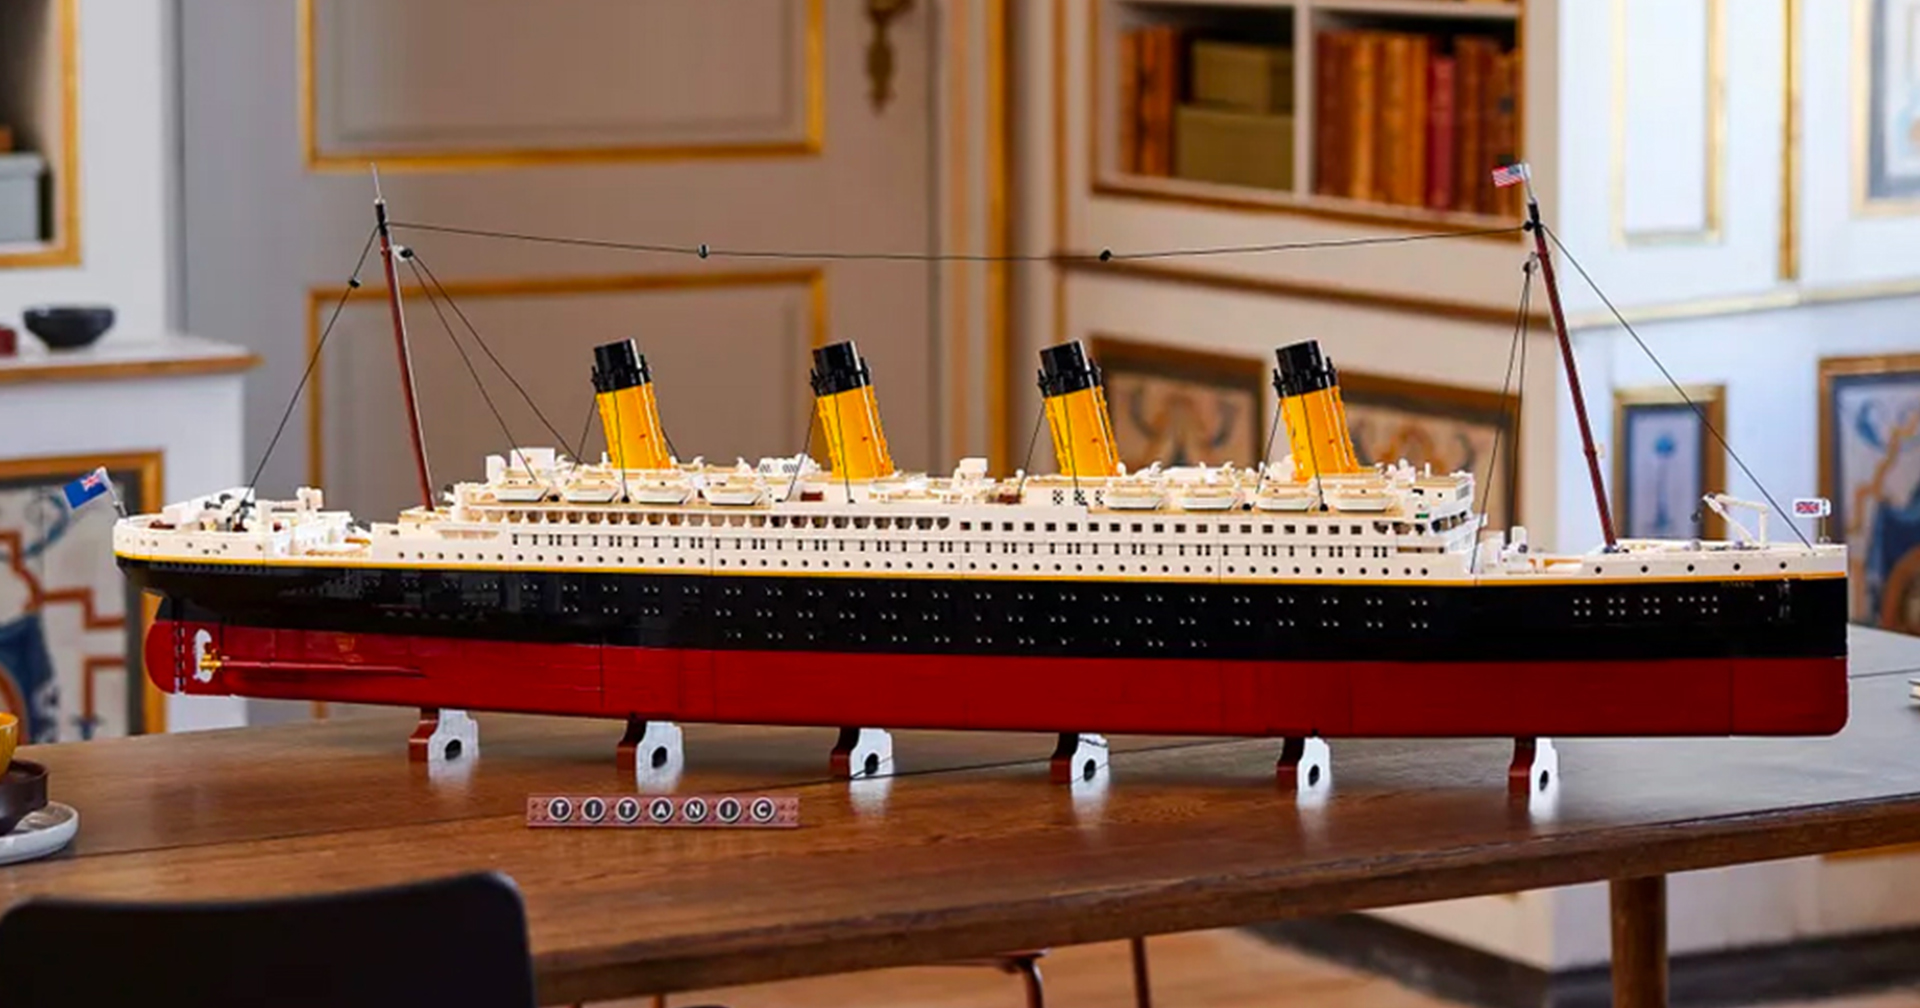 มาต่อ LEGO กว่า 9,090 ชิ้น เป็นเรือไททานิคกันเถอะ!